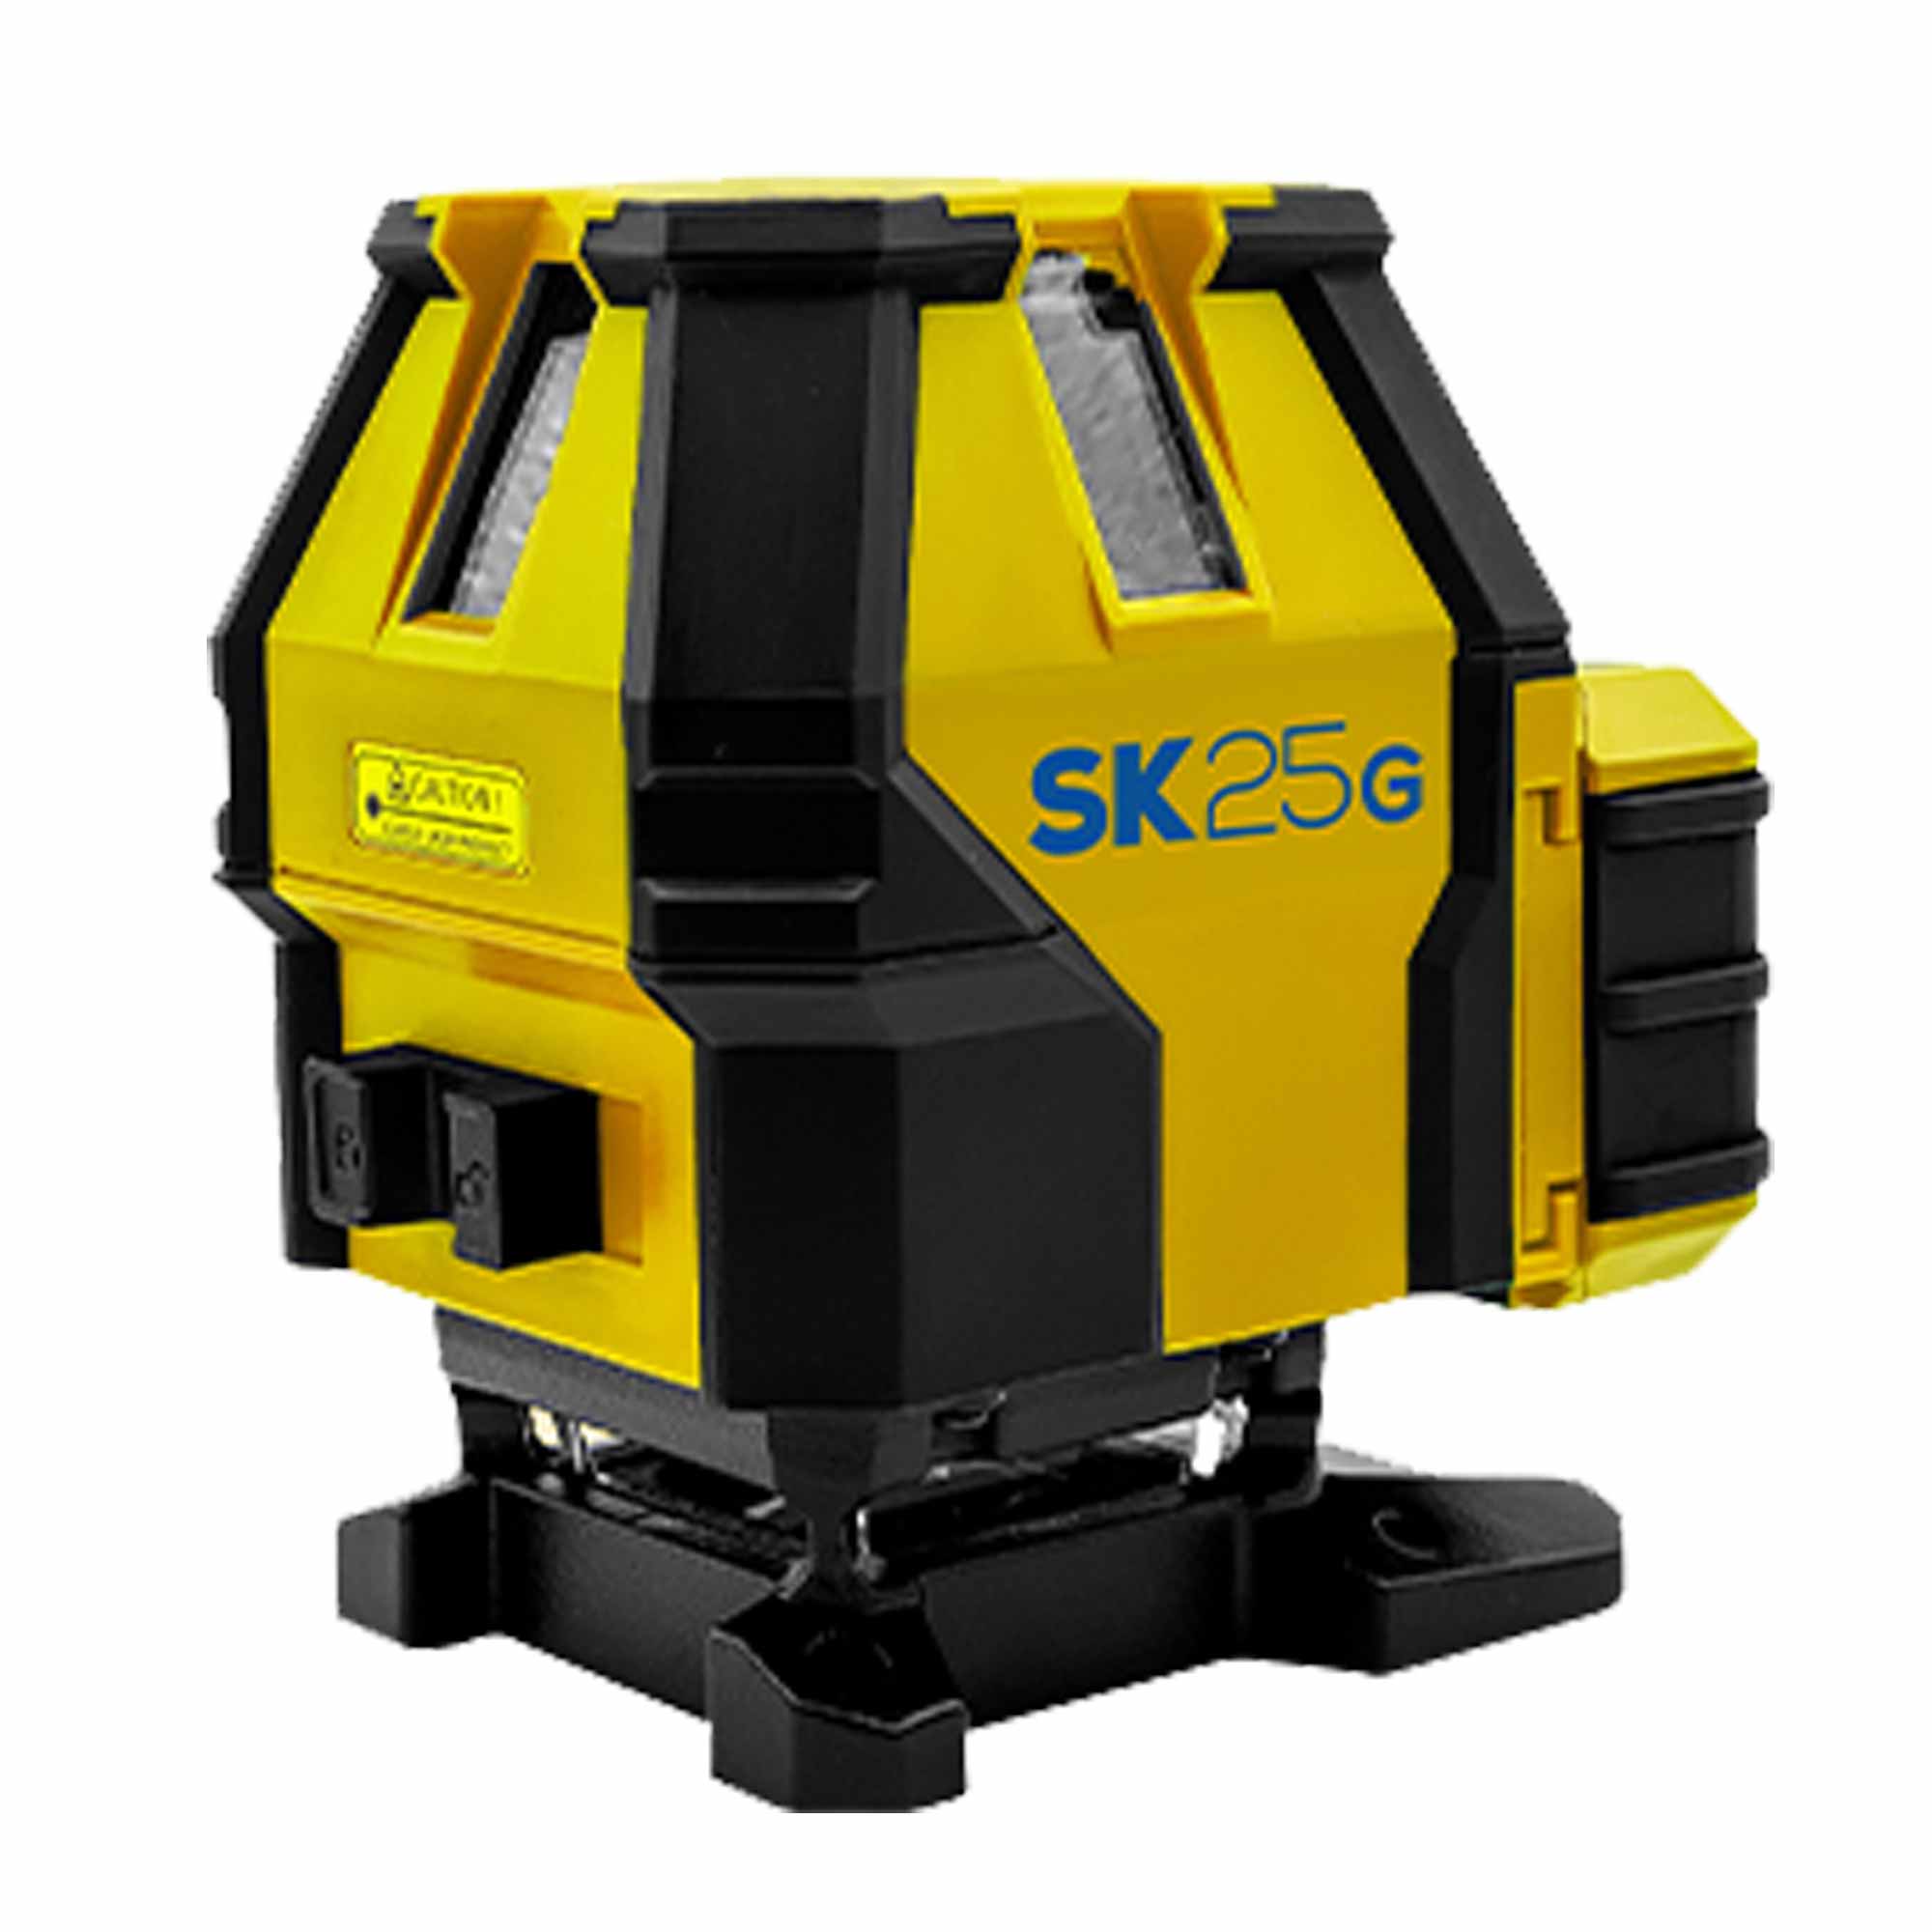 Tracciatore laser Spektra SK25G